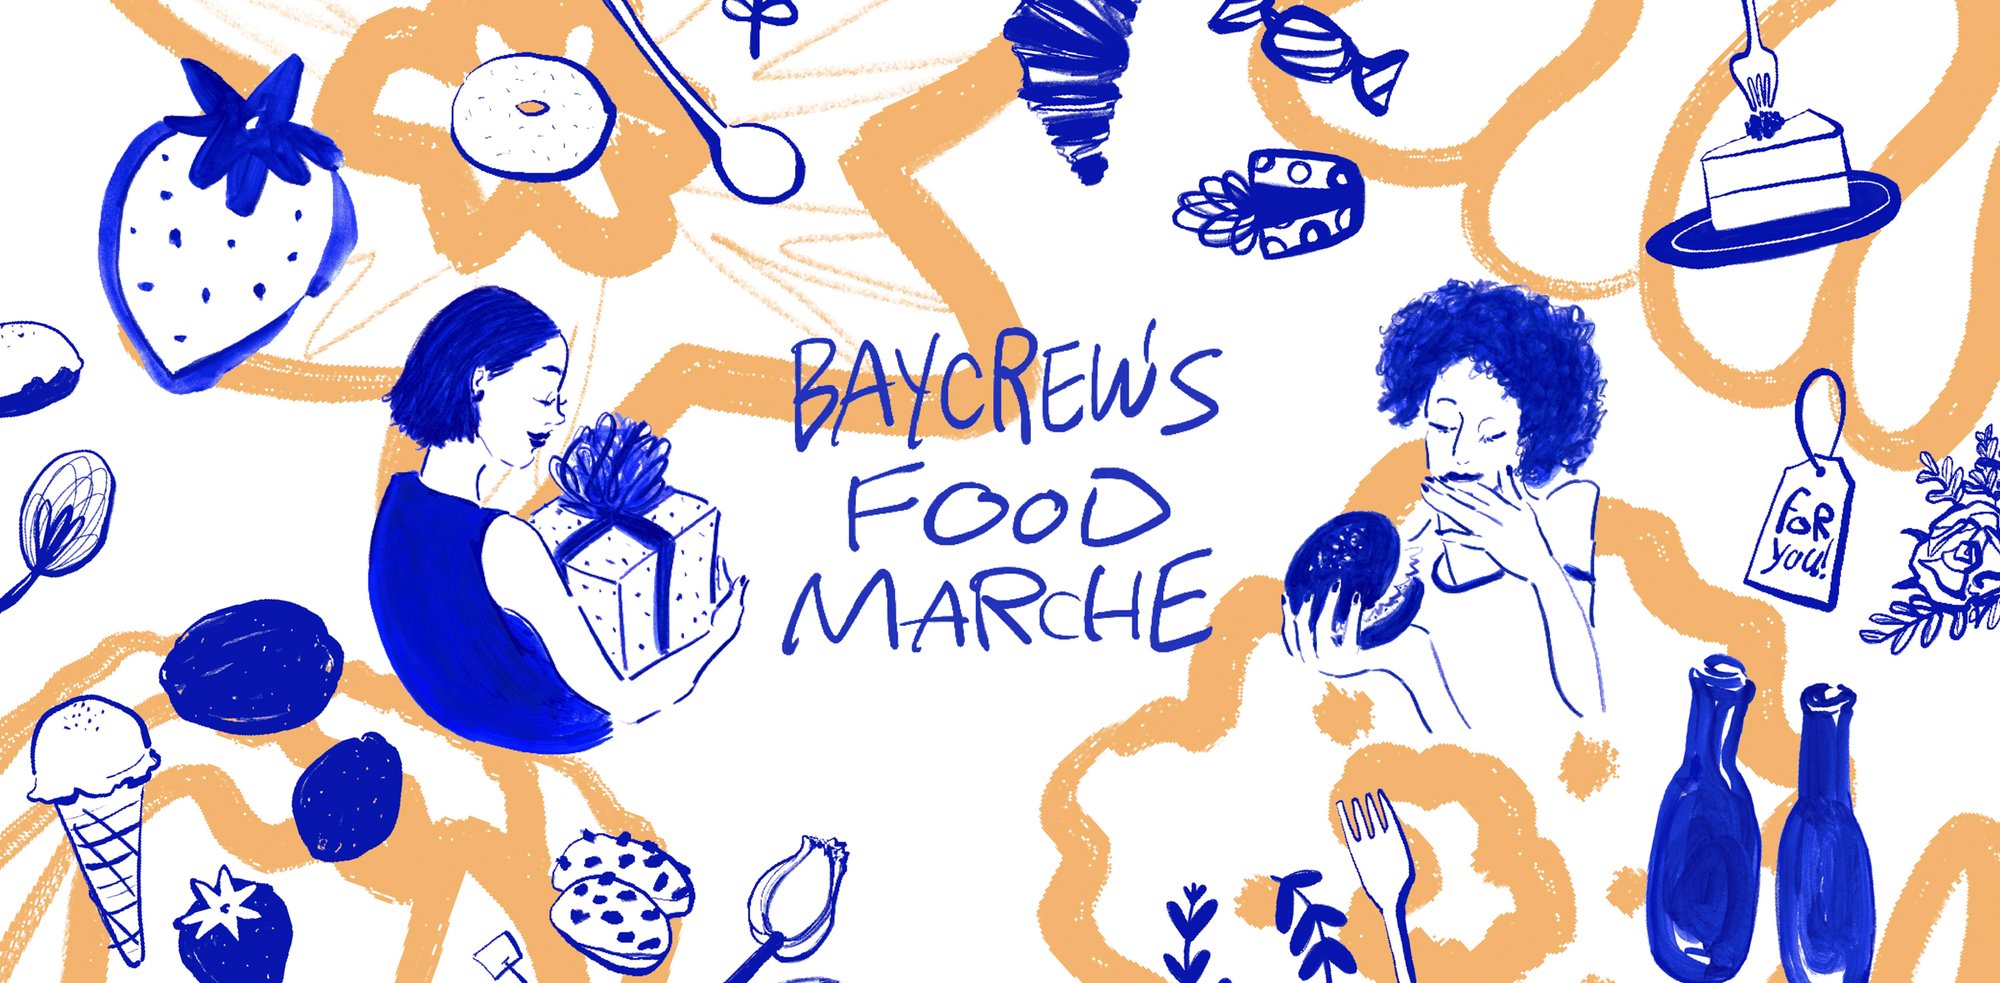 佐伯ゆう子による「BAYCREW’S FOOD MARCHE」のキービジュアル